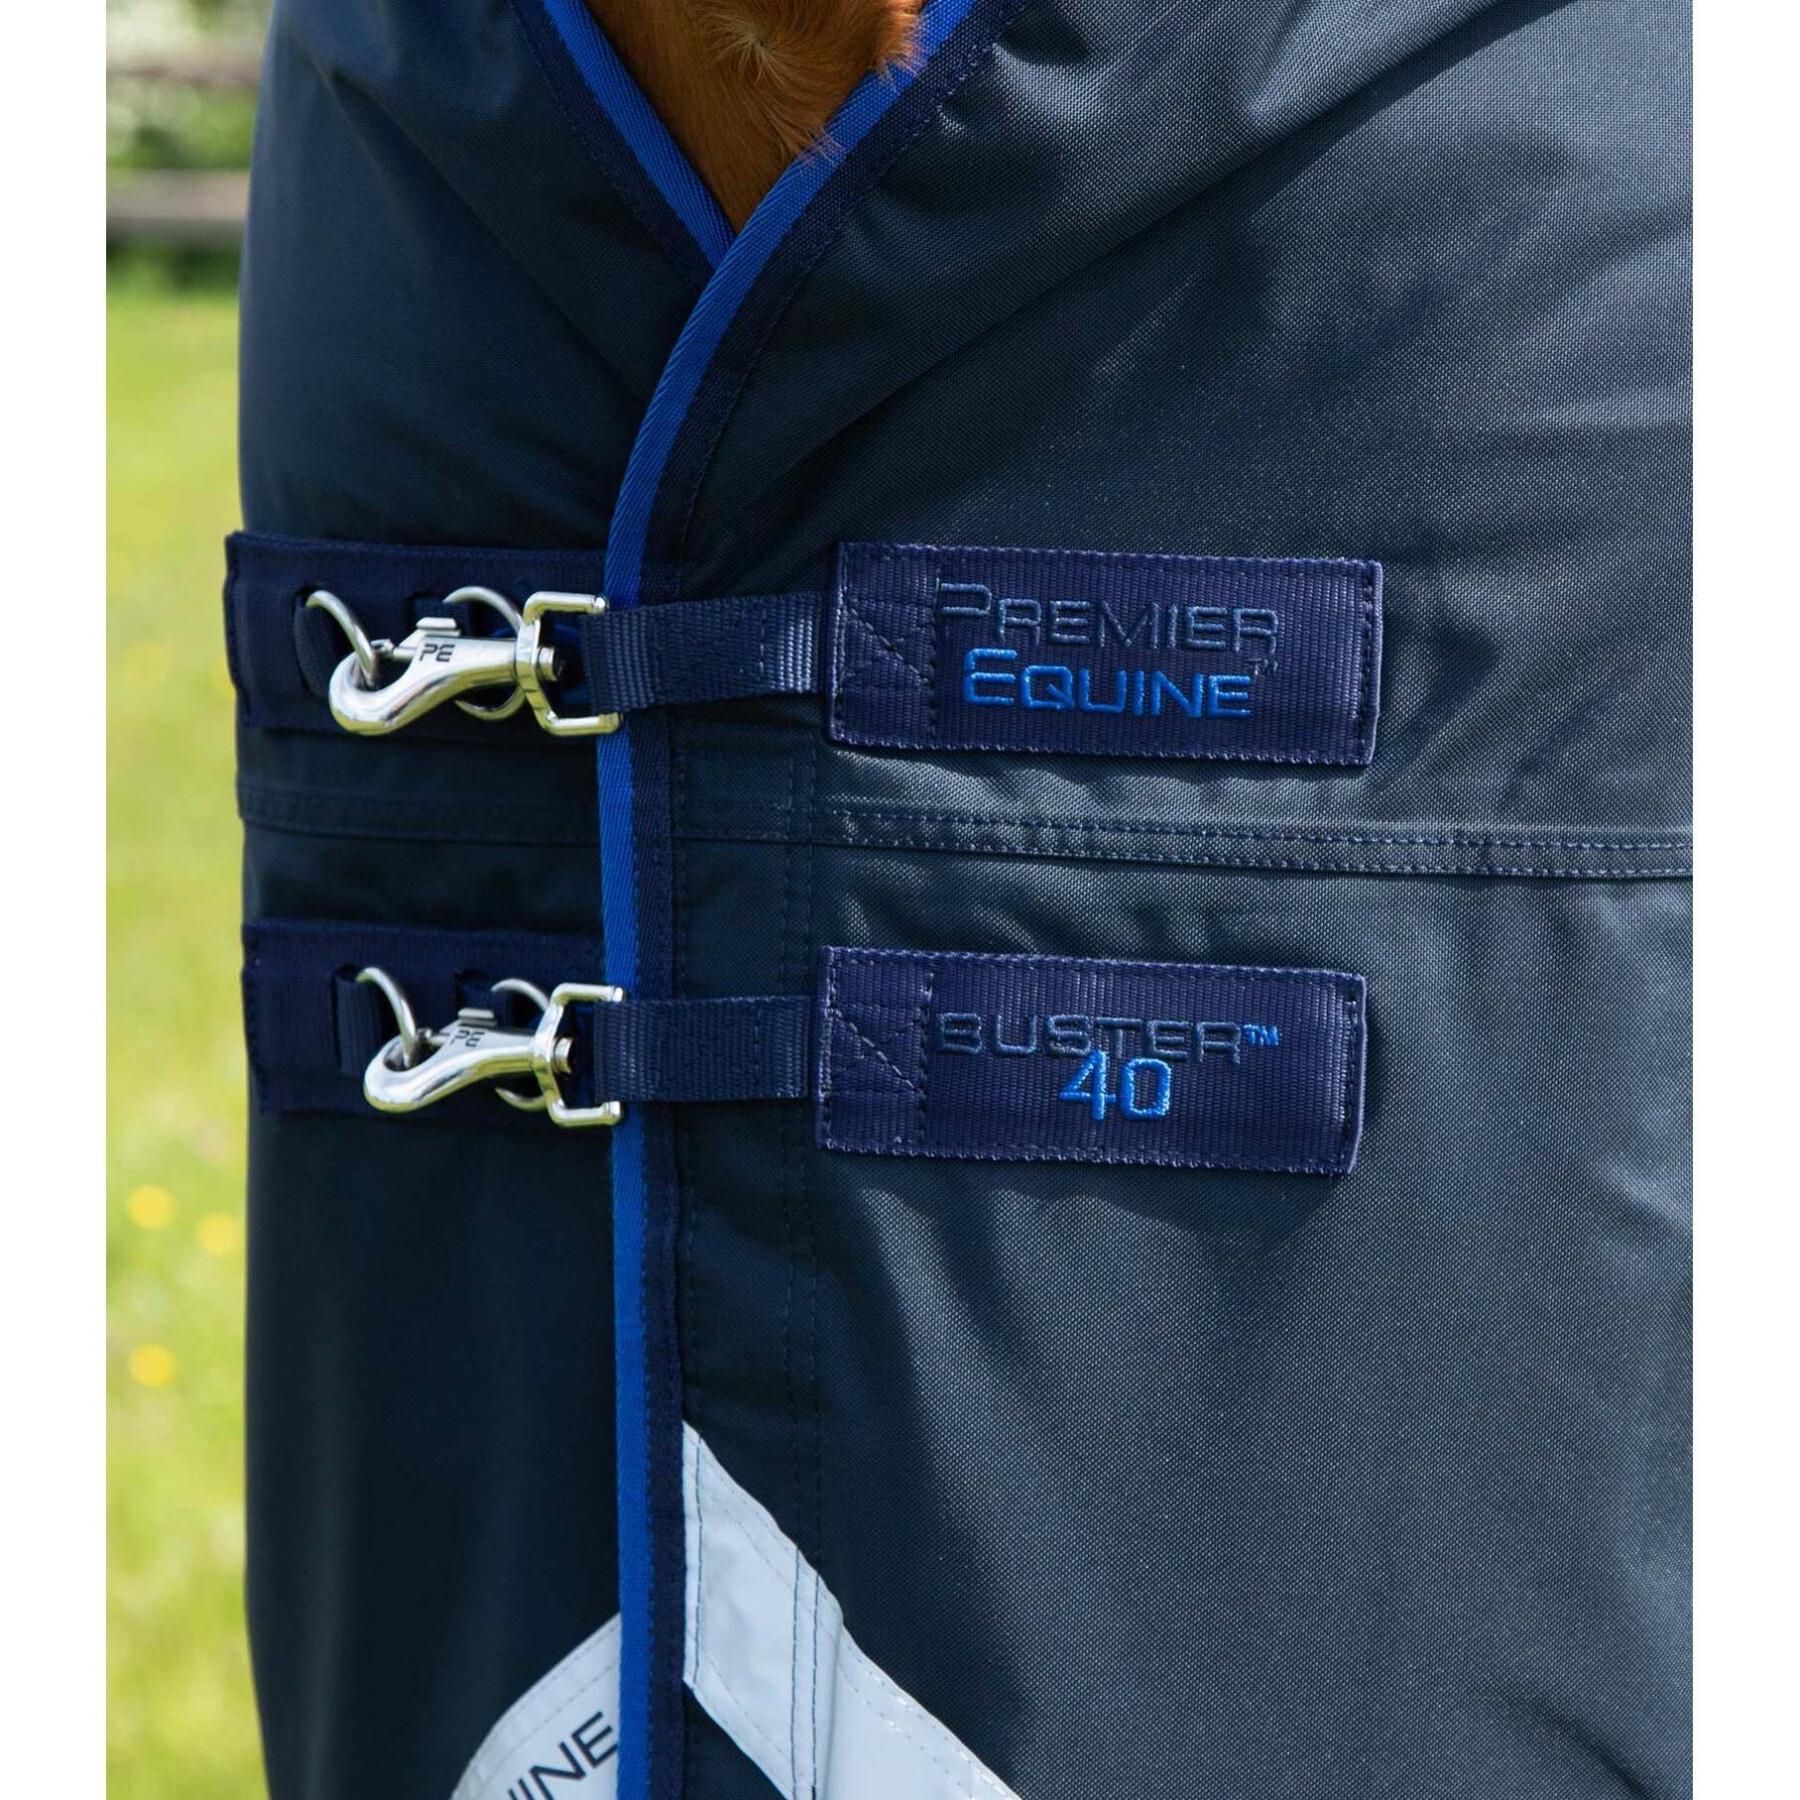 Wasserdichte Outdoor-Decke mit Halsteil Premier Equine Buster 40g